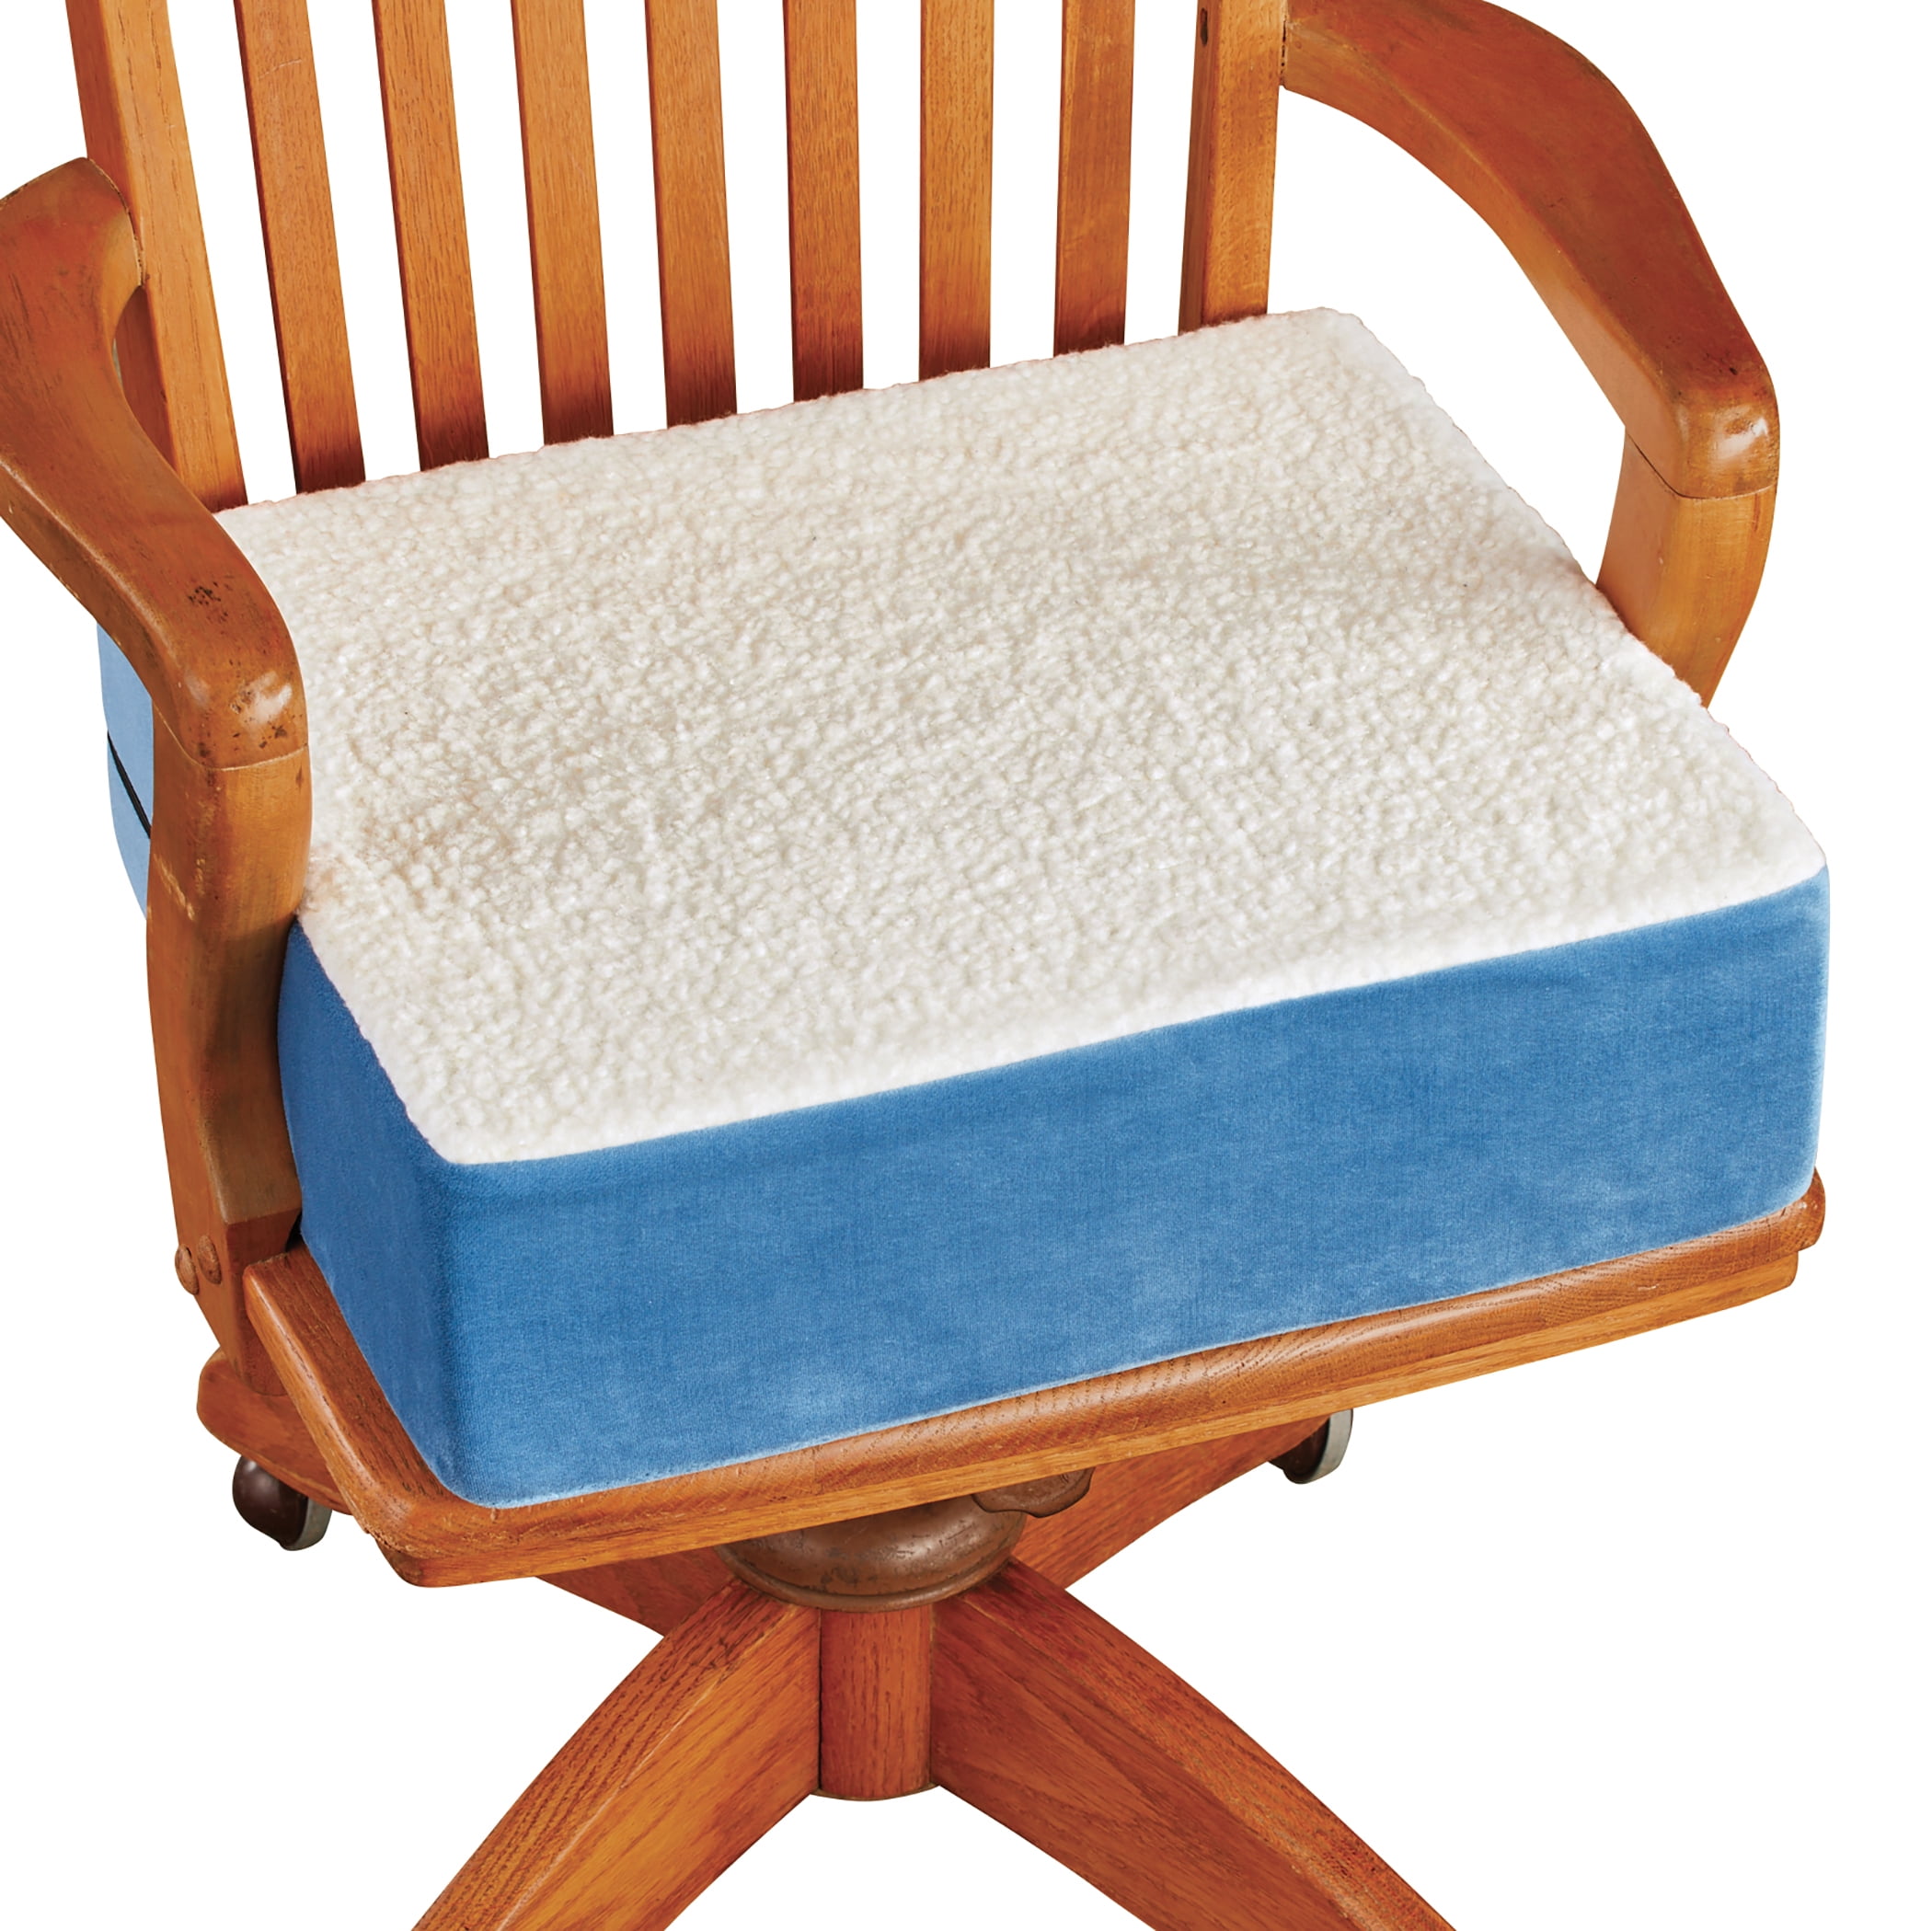 Extra Thick Foam Chair Cushion - 14.000 x 14.000 x 5.000